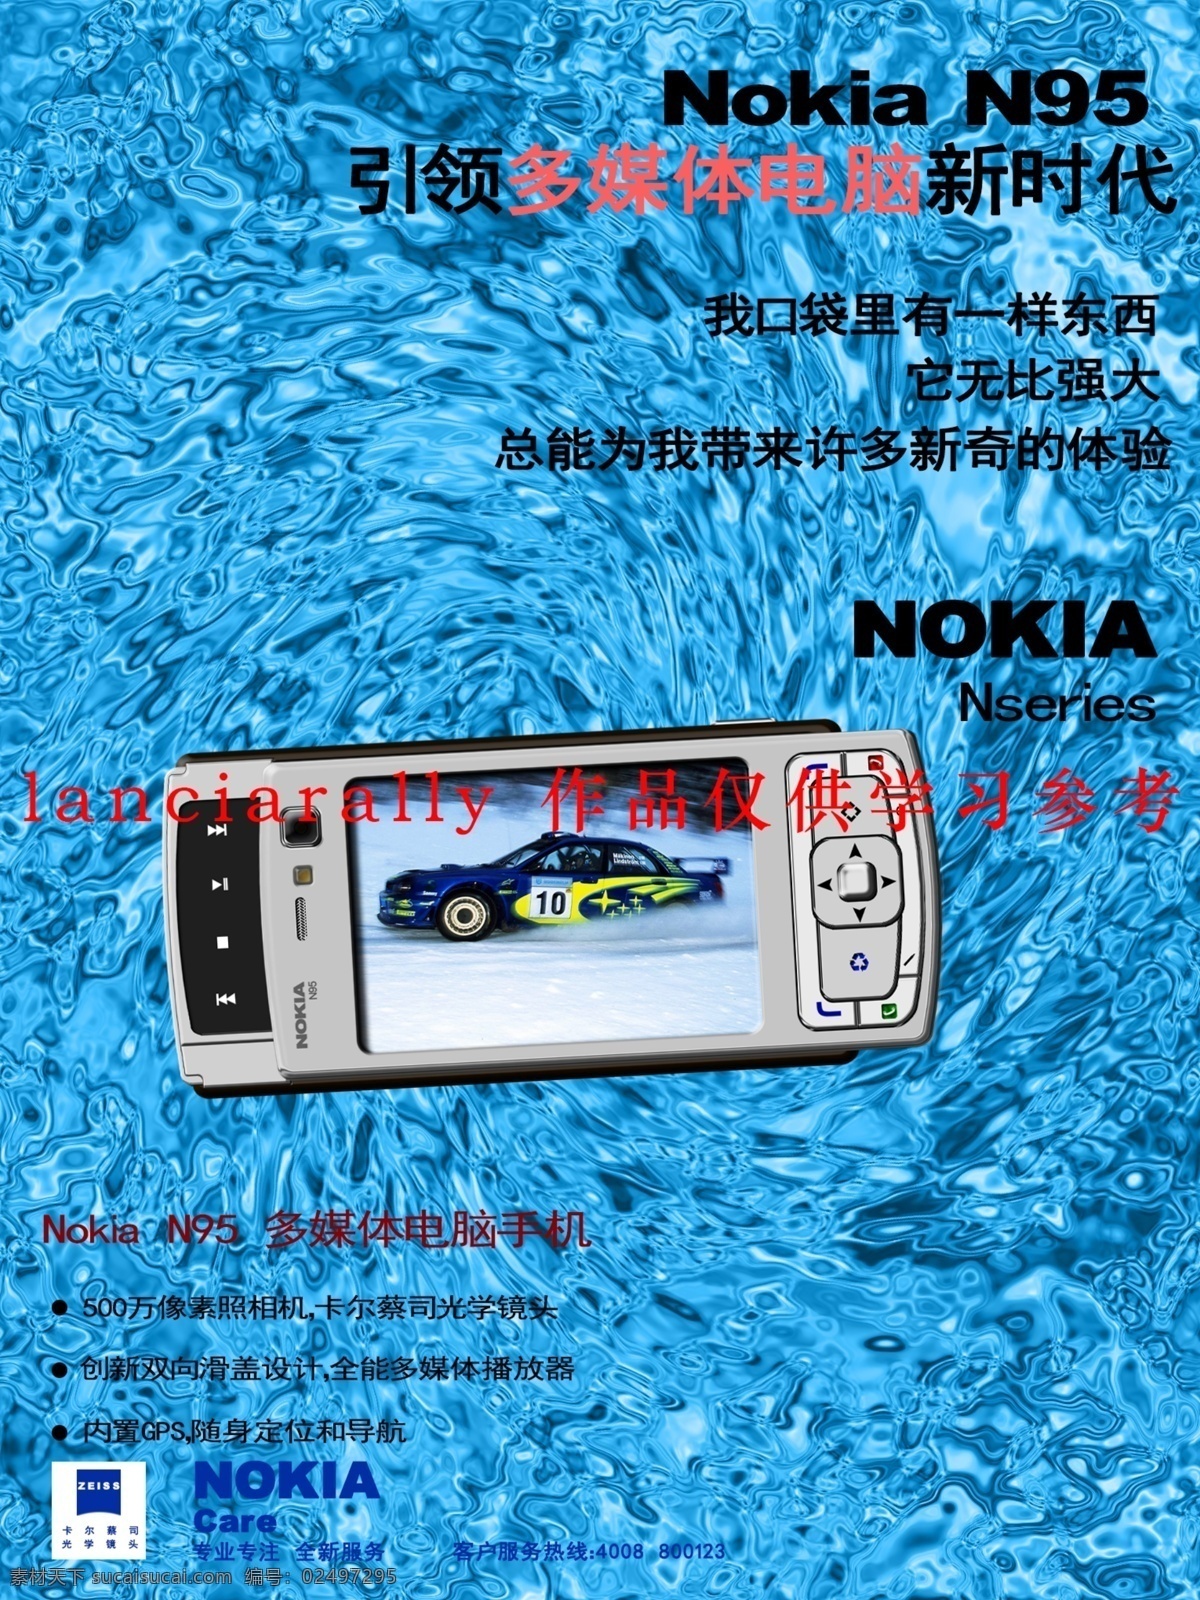 诺基亚 n95 手机 广告 分层 源文件 青色 天蓝色